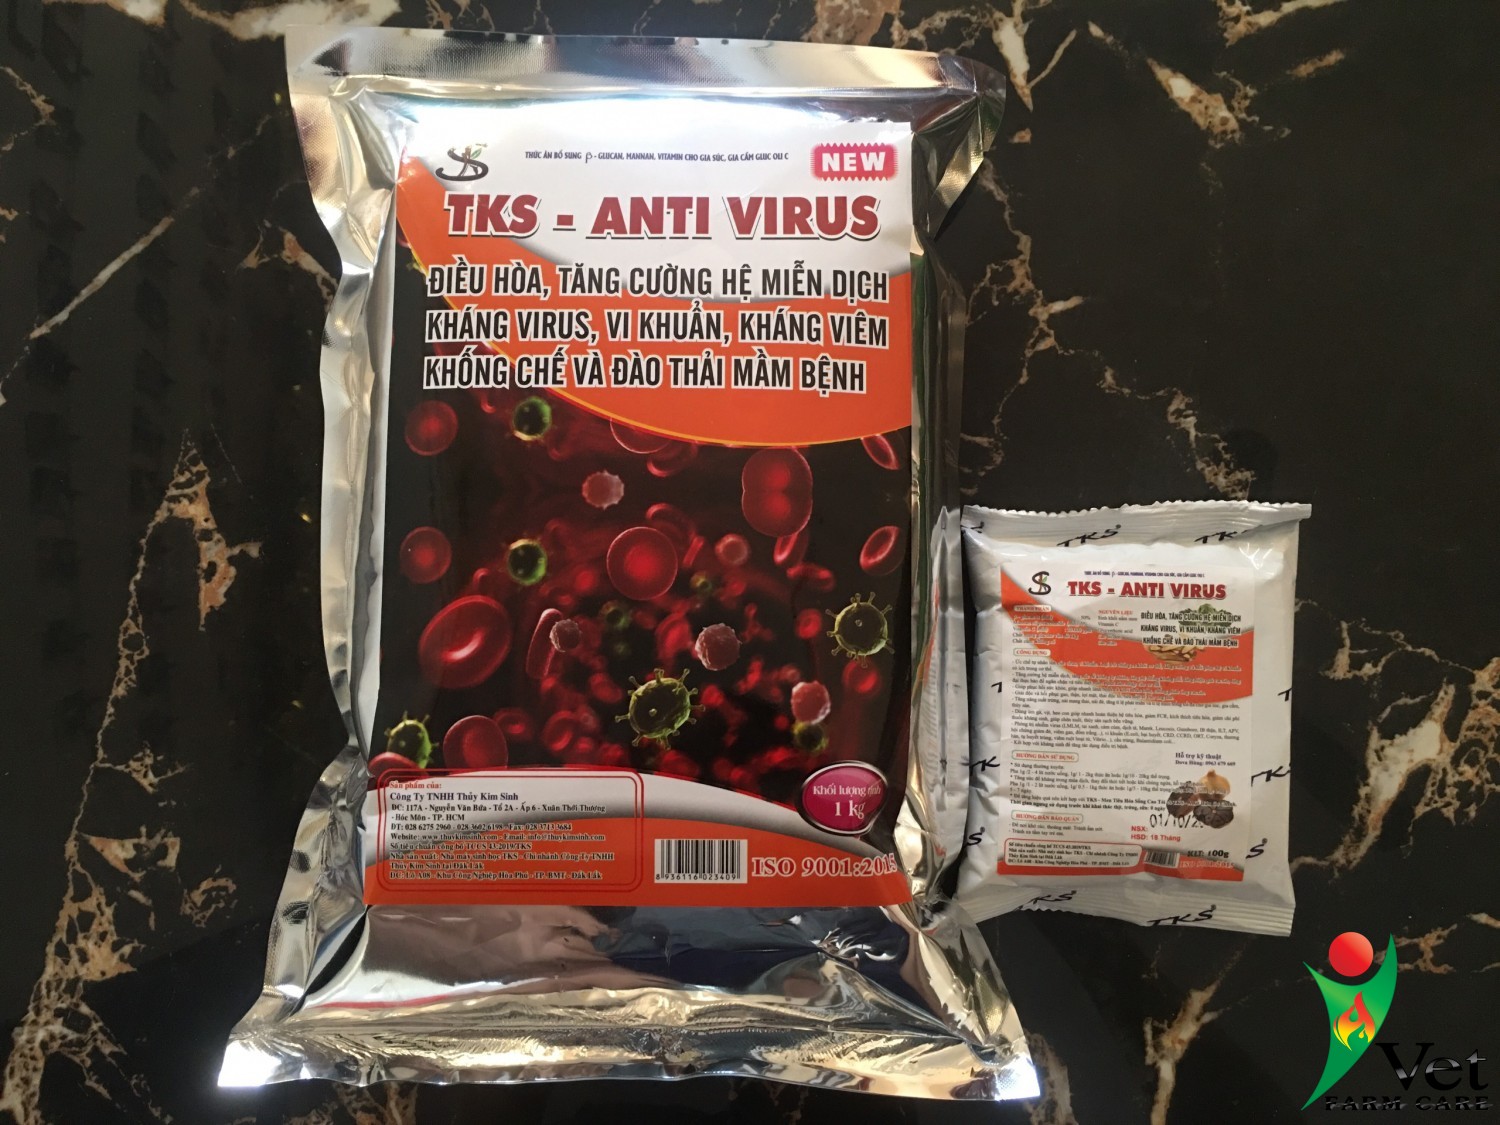 TKS-Anti virus thuốc phòng viêm da nổi cục